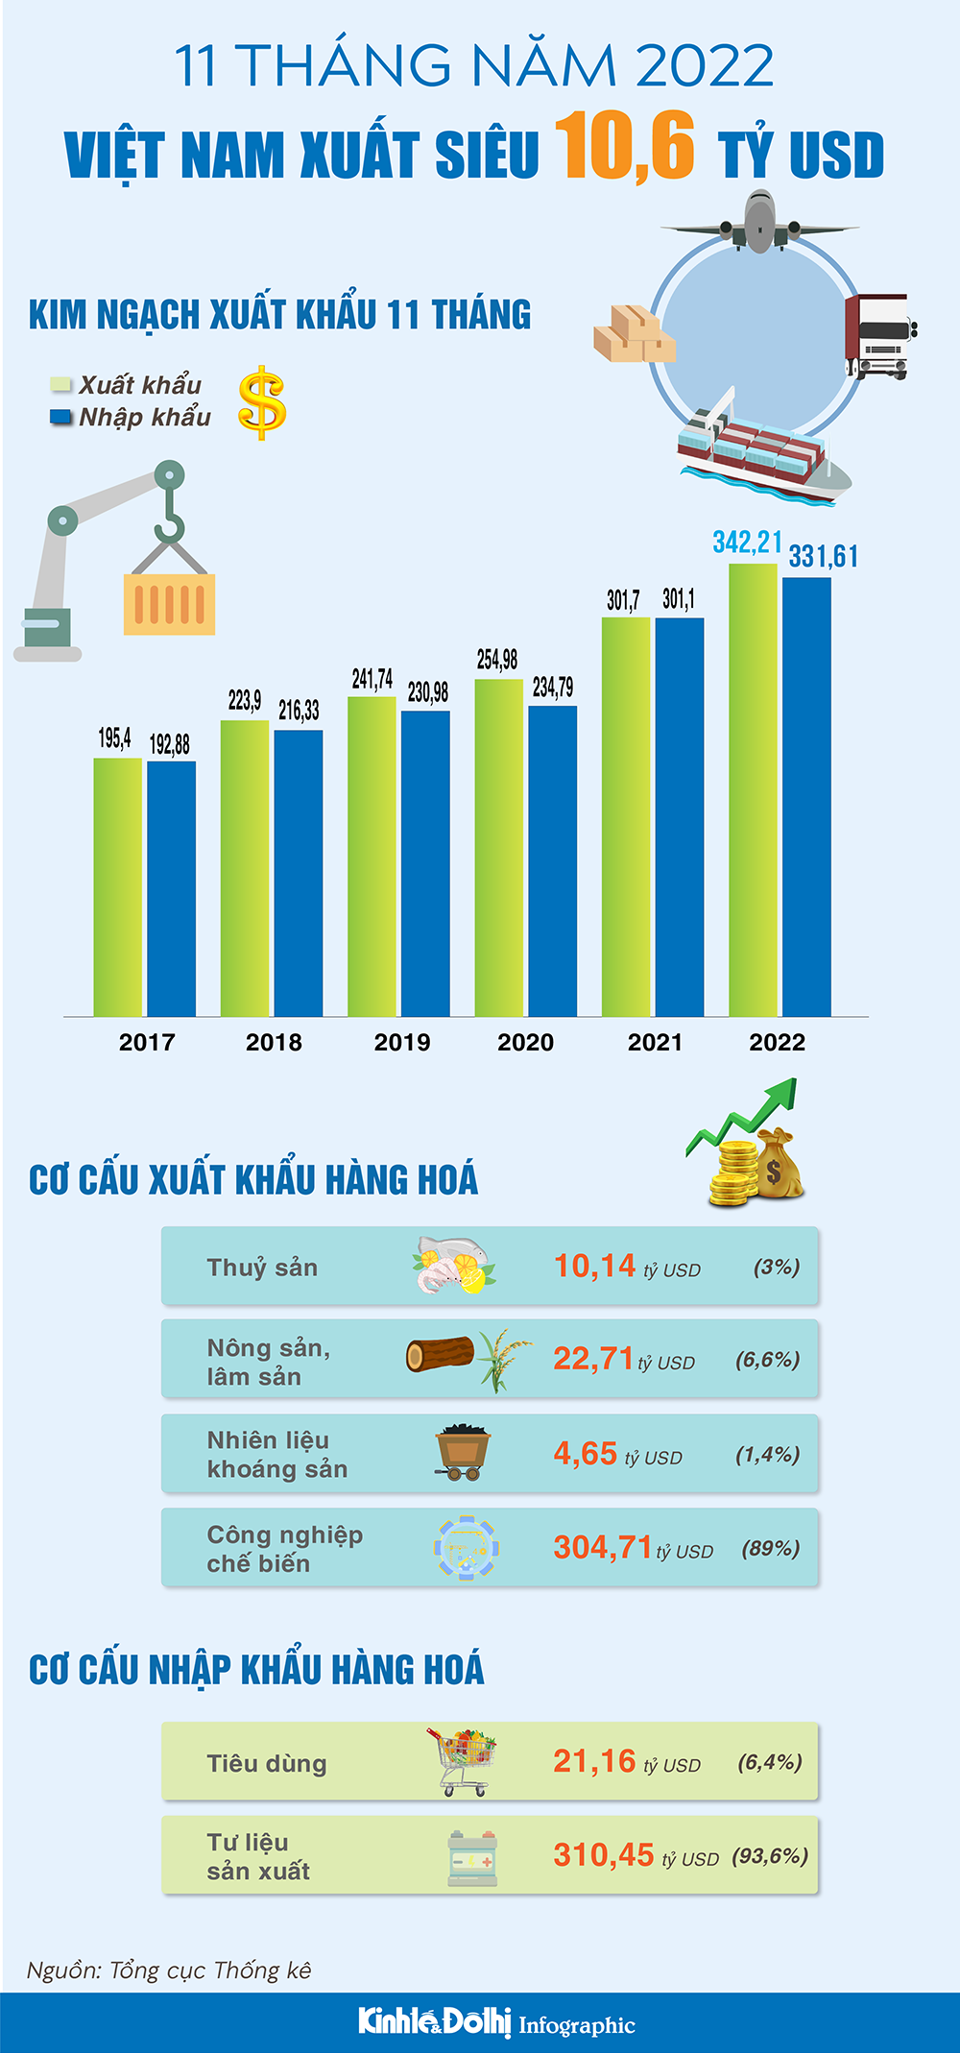 11 tháng, Việt Nam xuất siêu 10,6 tỷ USD - Ảnh 1